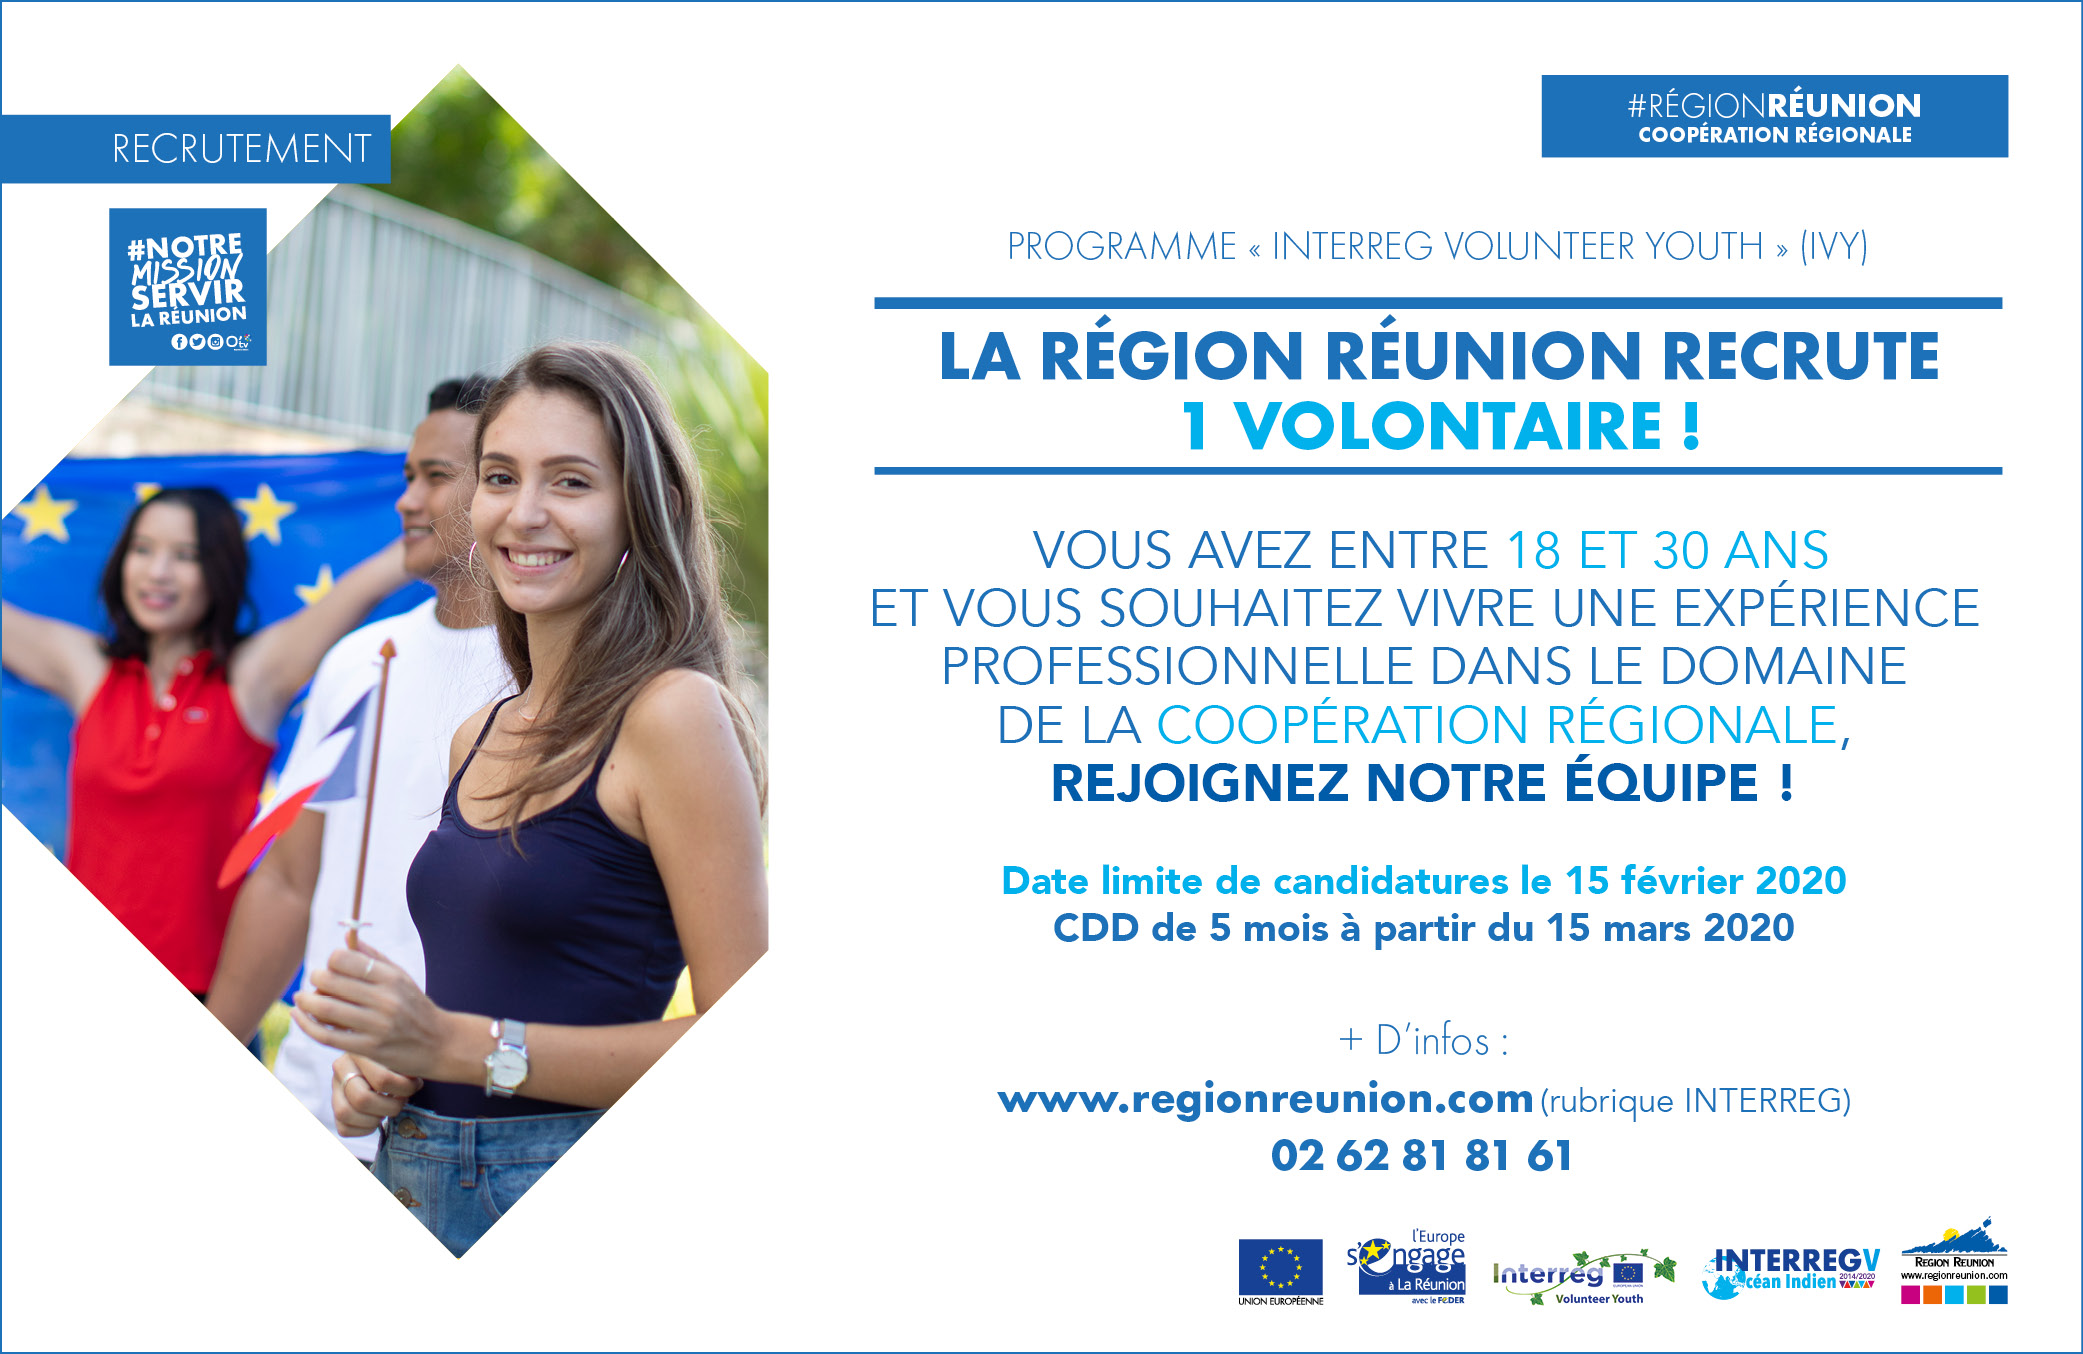 La Région Réunion recrute 1 volontaire dans le cadre de l’initiative Interreg Volunteer Youth (IVY)